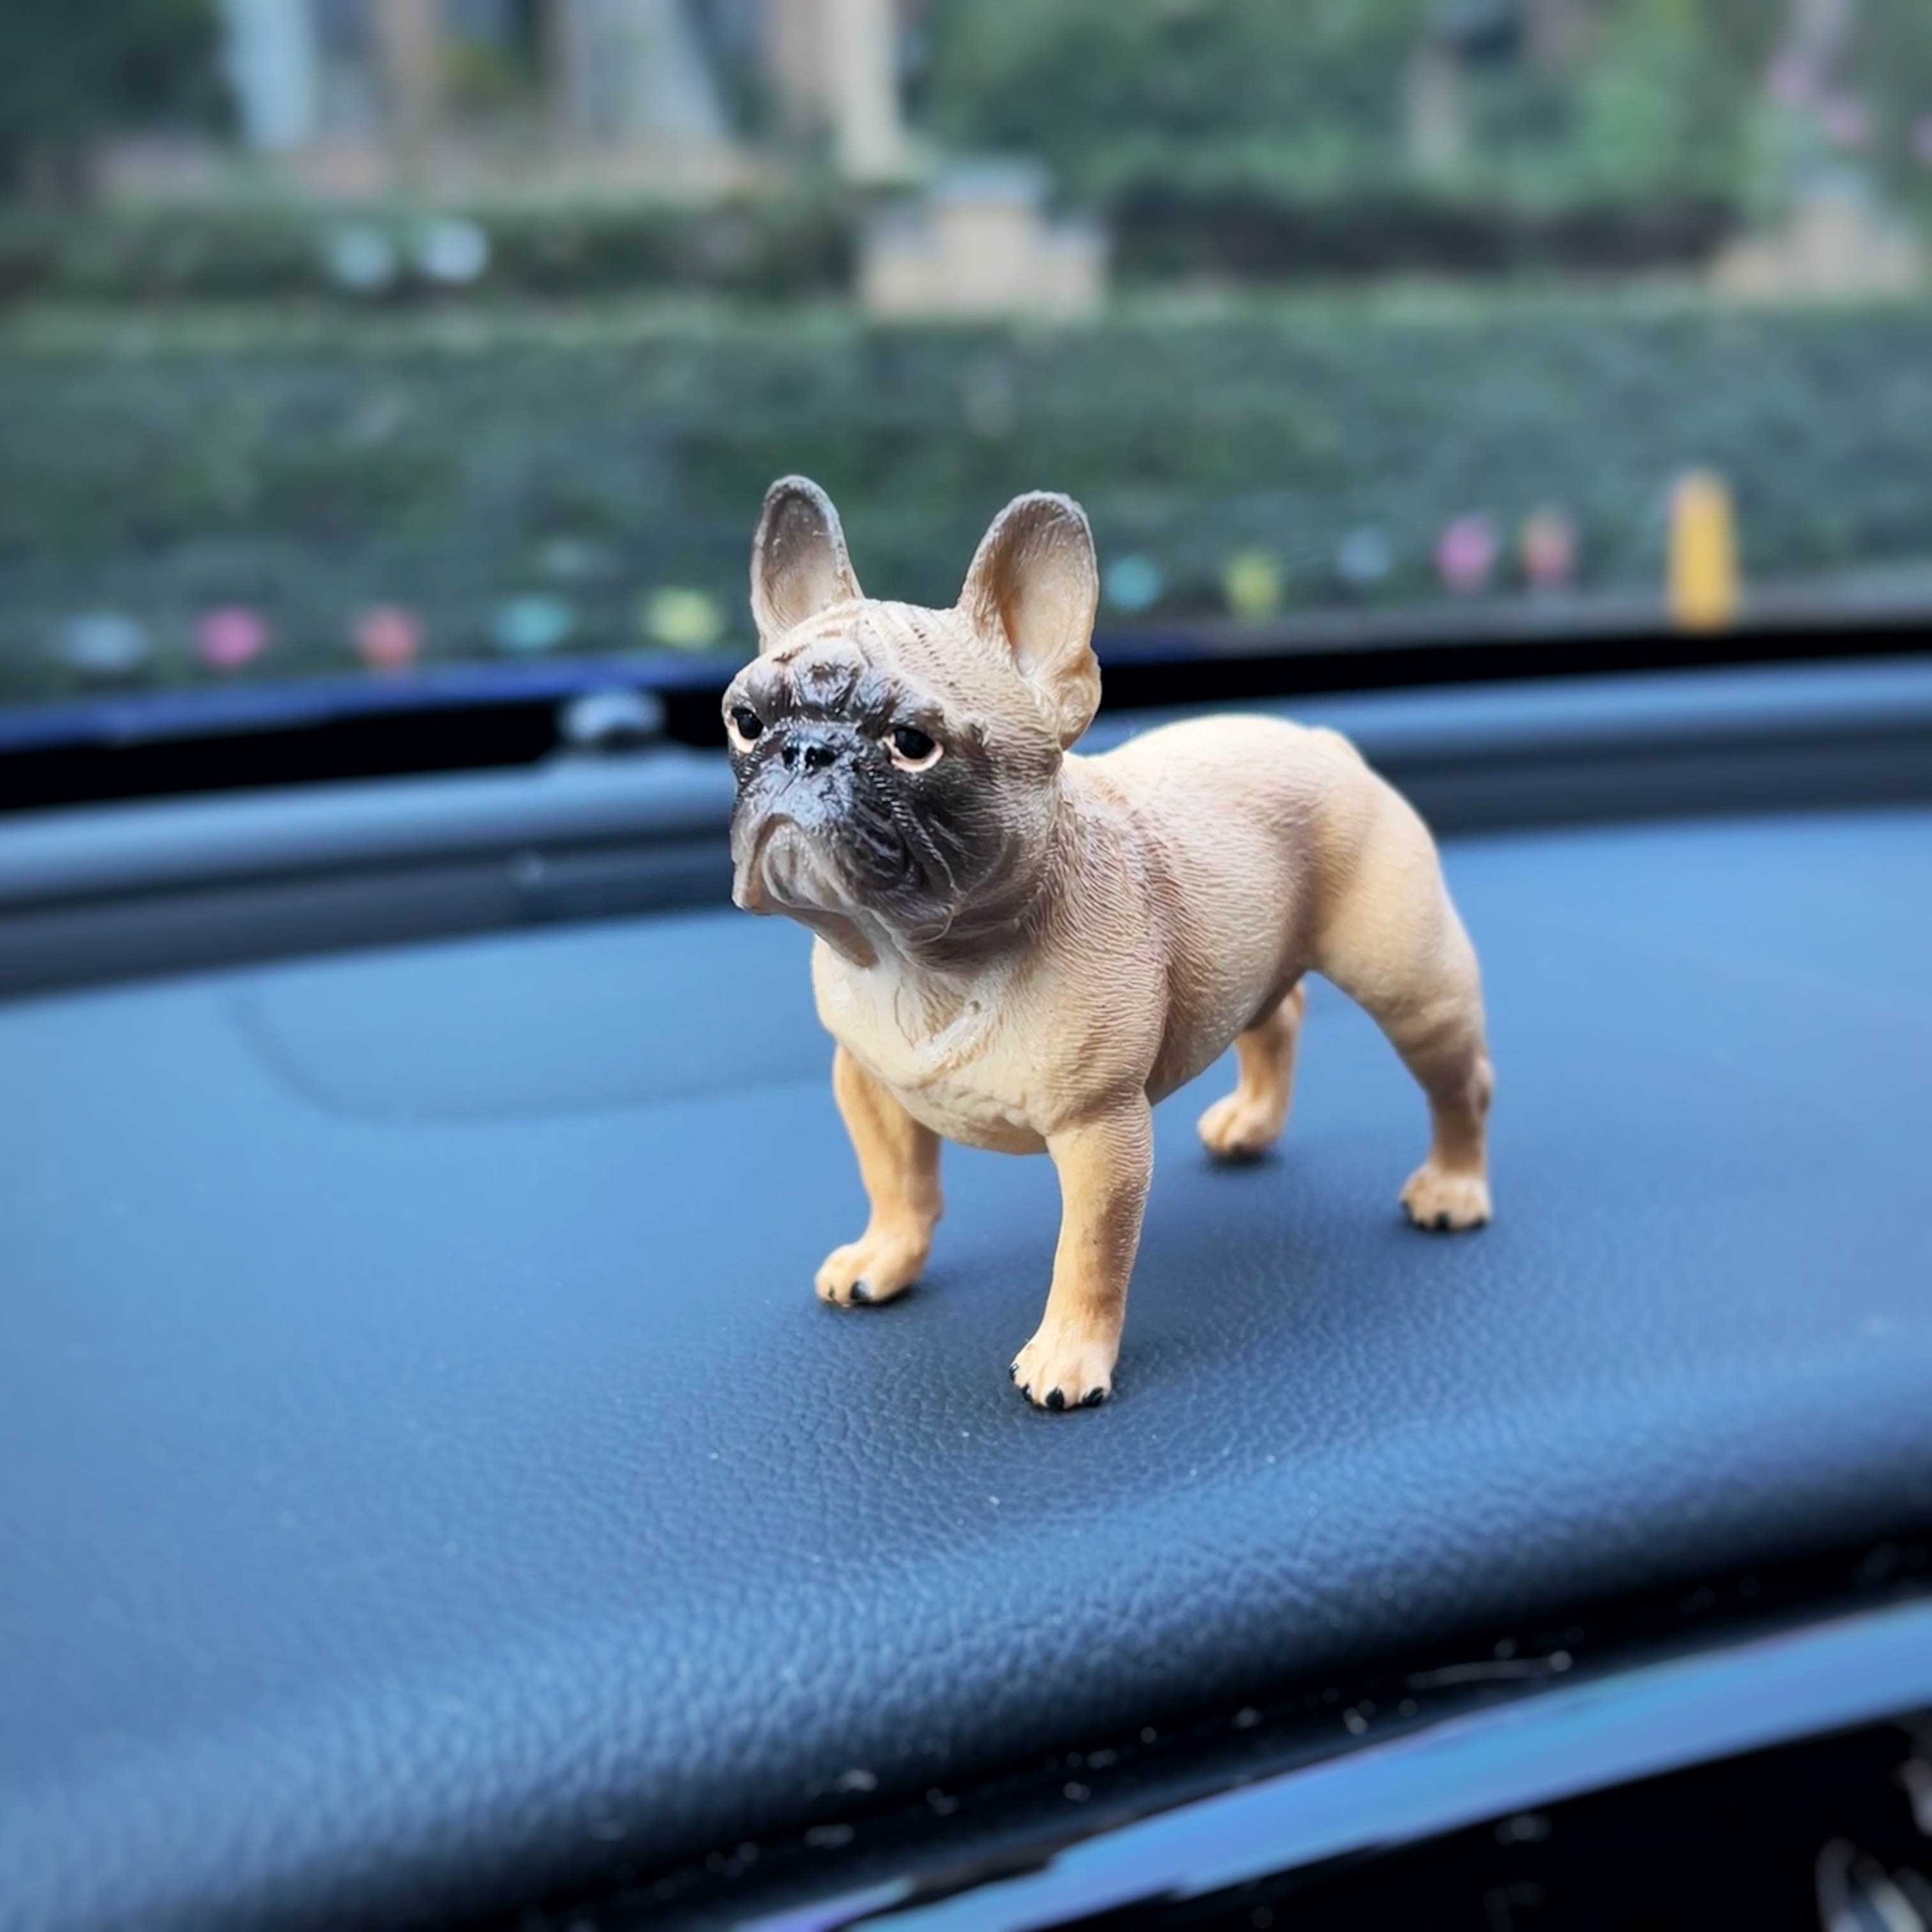 Cute Dog Animals Model Car Ornament Car Dashboard Decoration - Temu